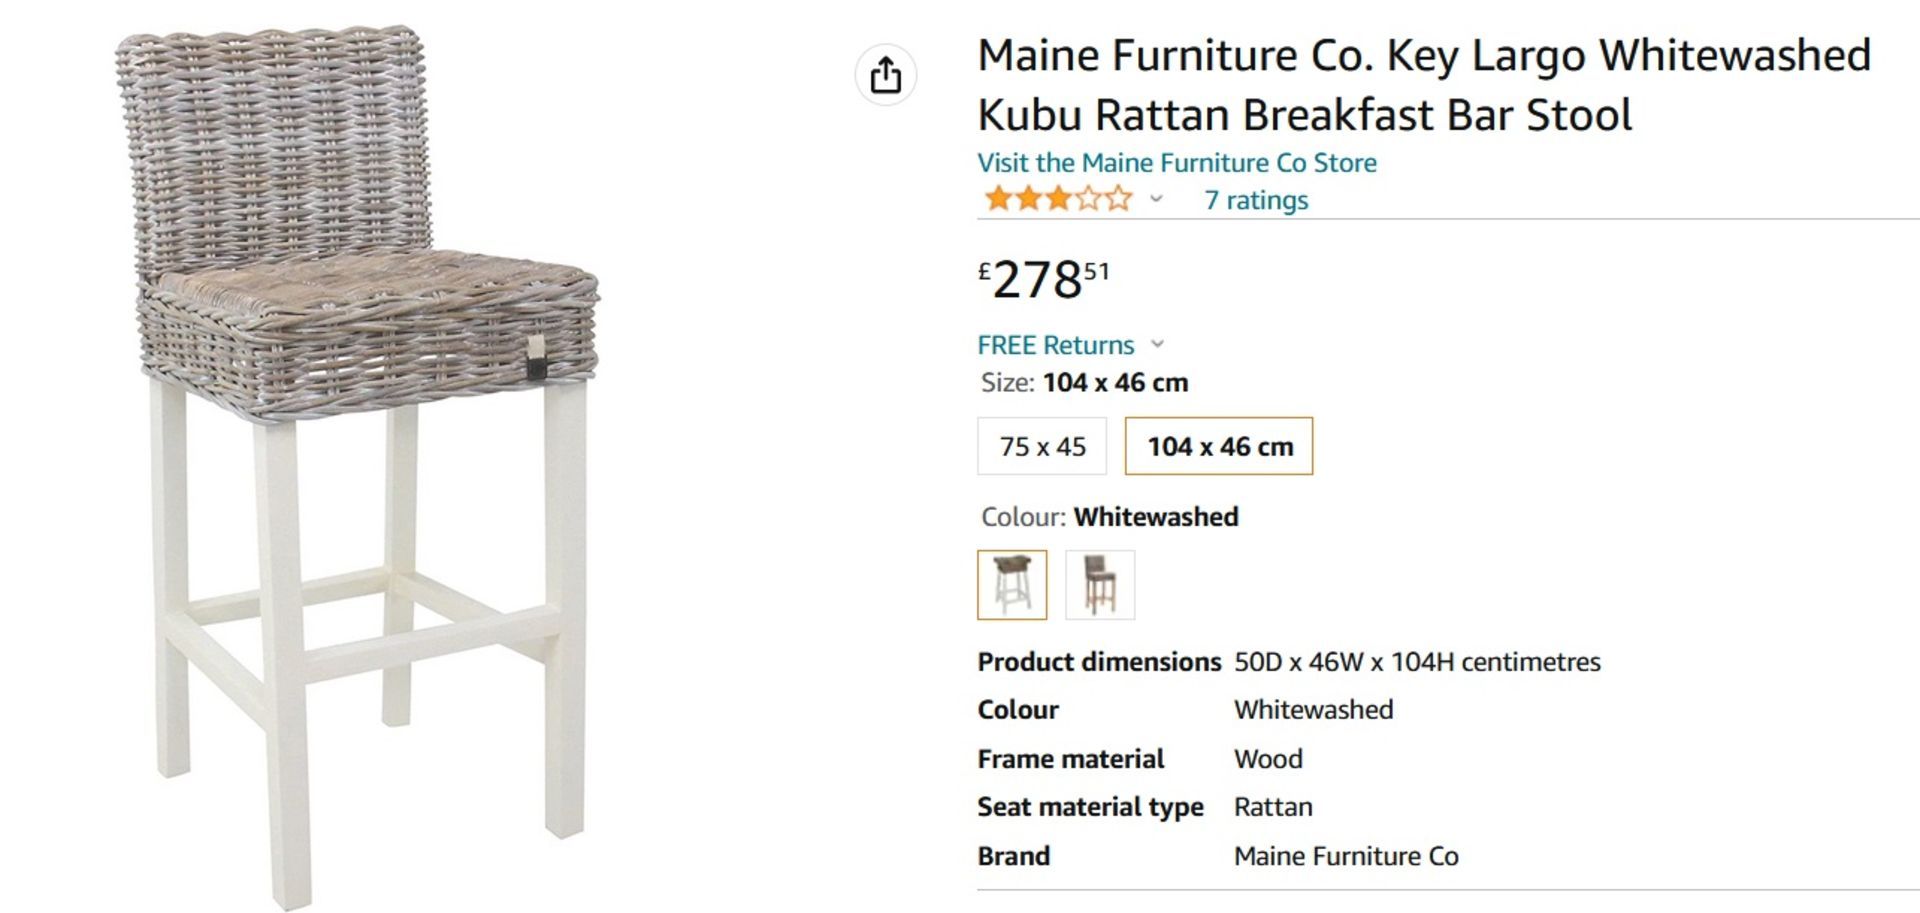 NEW & BOXED 2x Maine Furniture Co. Key Largo Whitewashed Kubu Rattan Breakfast Bar Stool. RRP £278. - Image 5 of 6